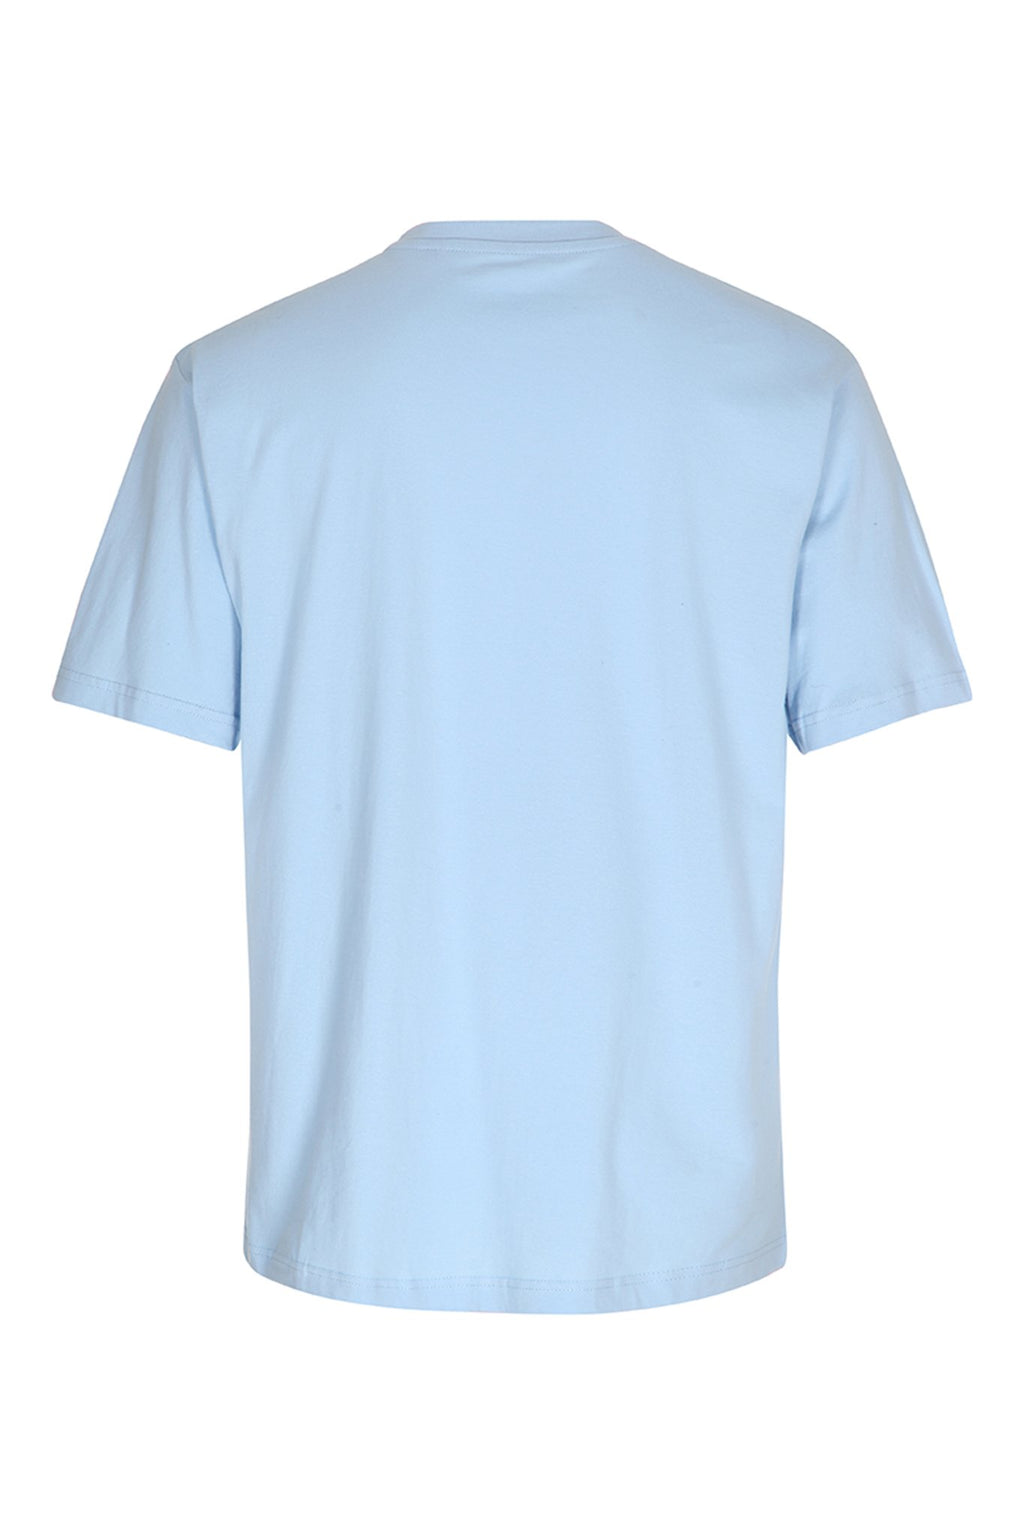 T-shirt pour enfants de base - bleu clair